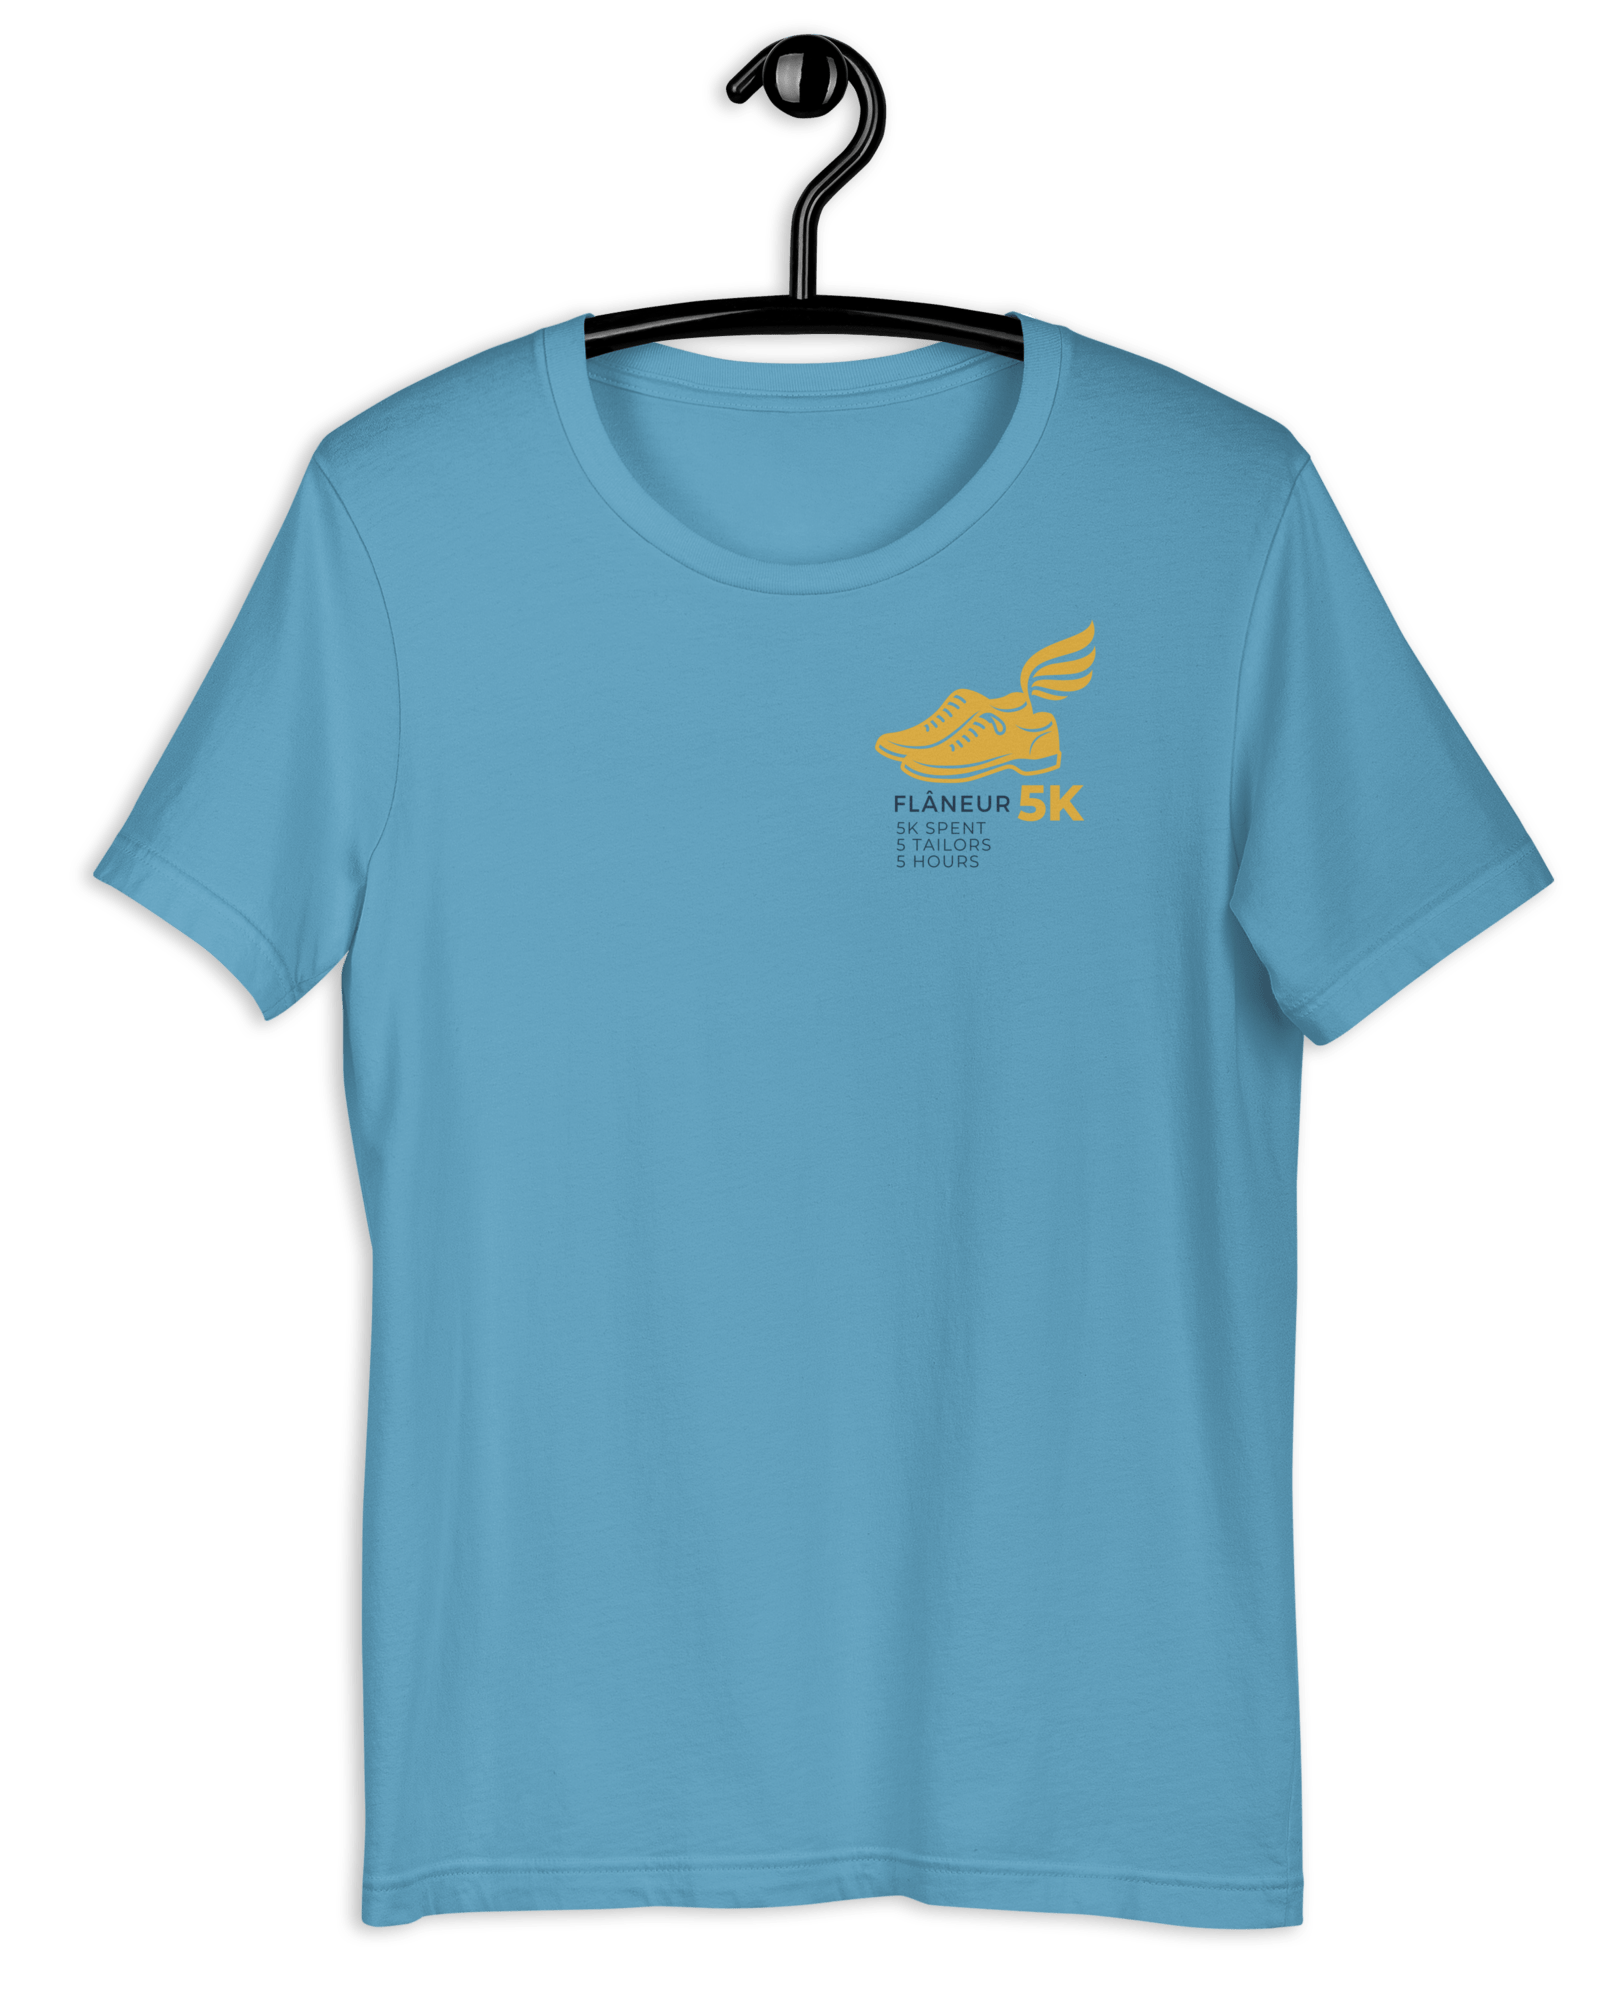 Flaneur 5K T-shirt Ocean Blue / S Shirts & Tops Jolly & Goode